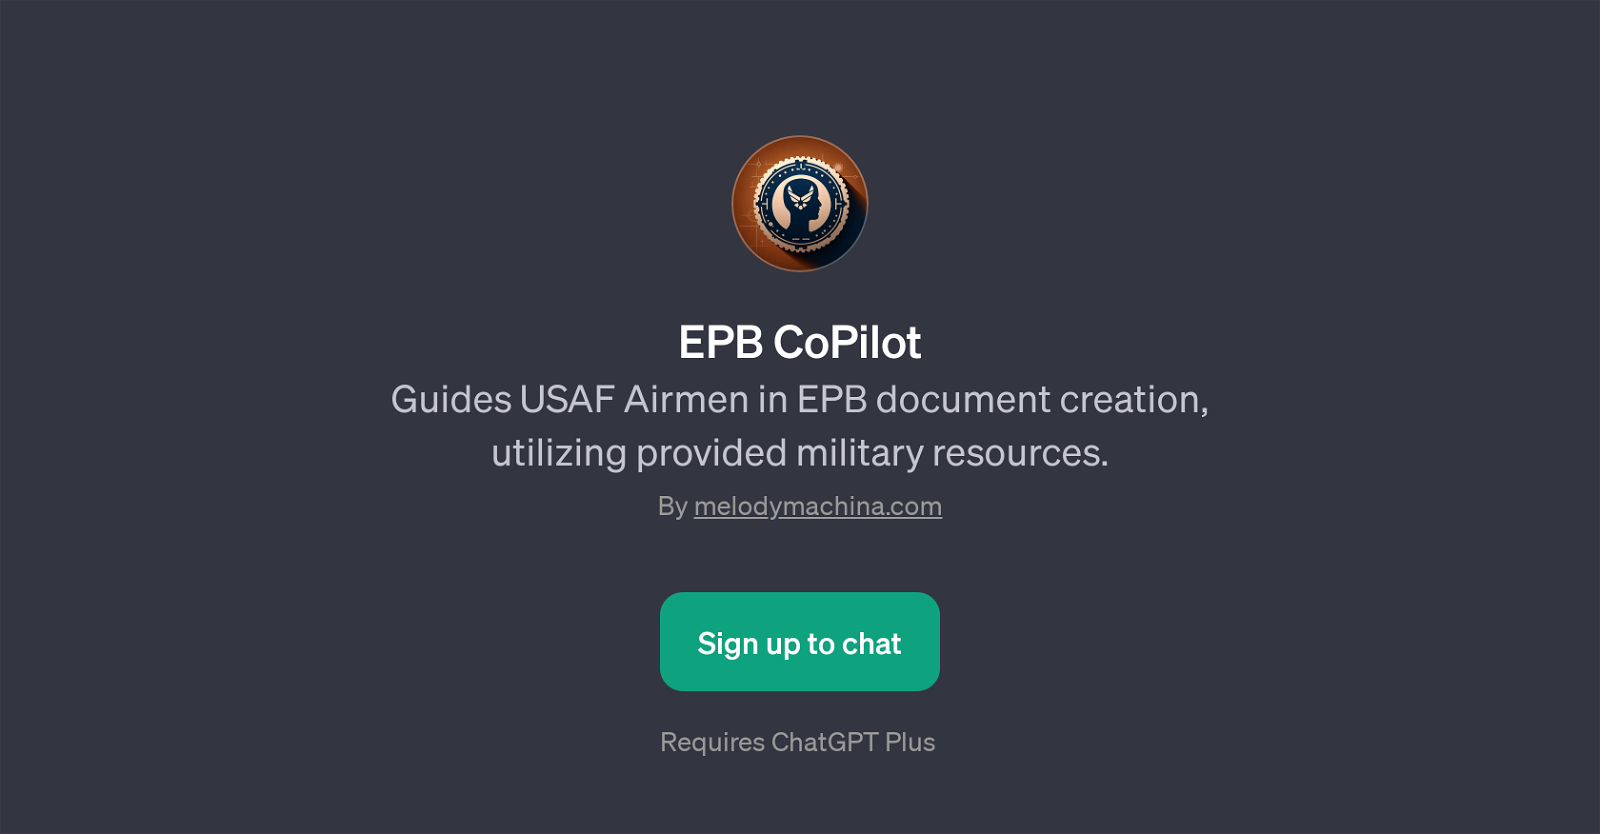 EPB CoPilot website